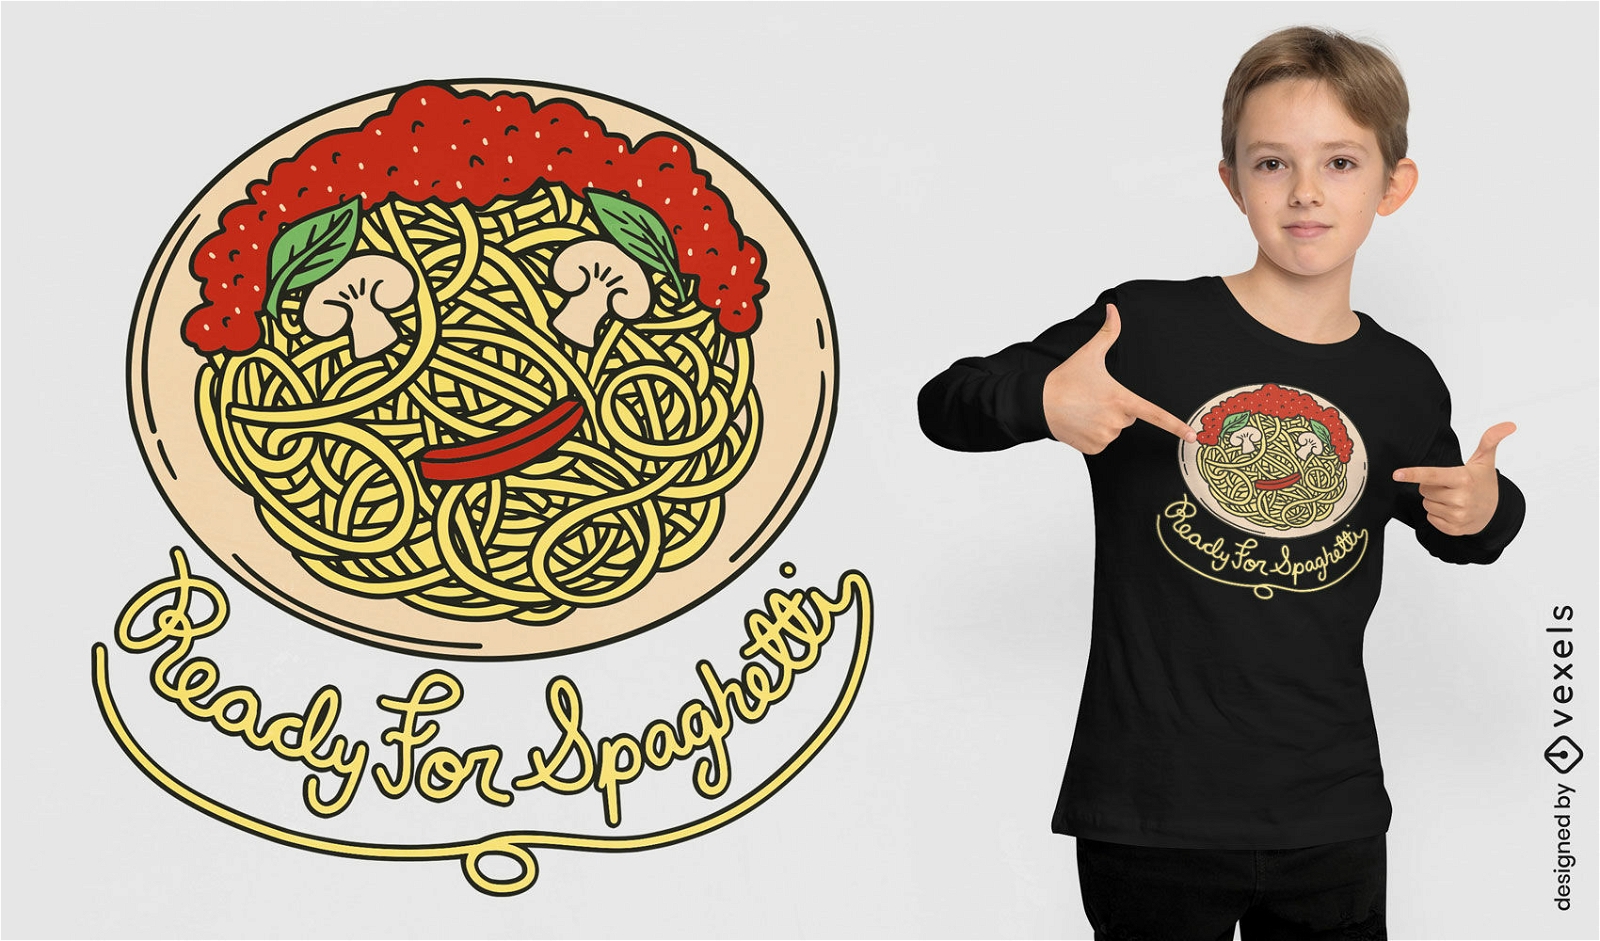 Spaghetti italienisches Gericht T-Shirt-Design